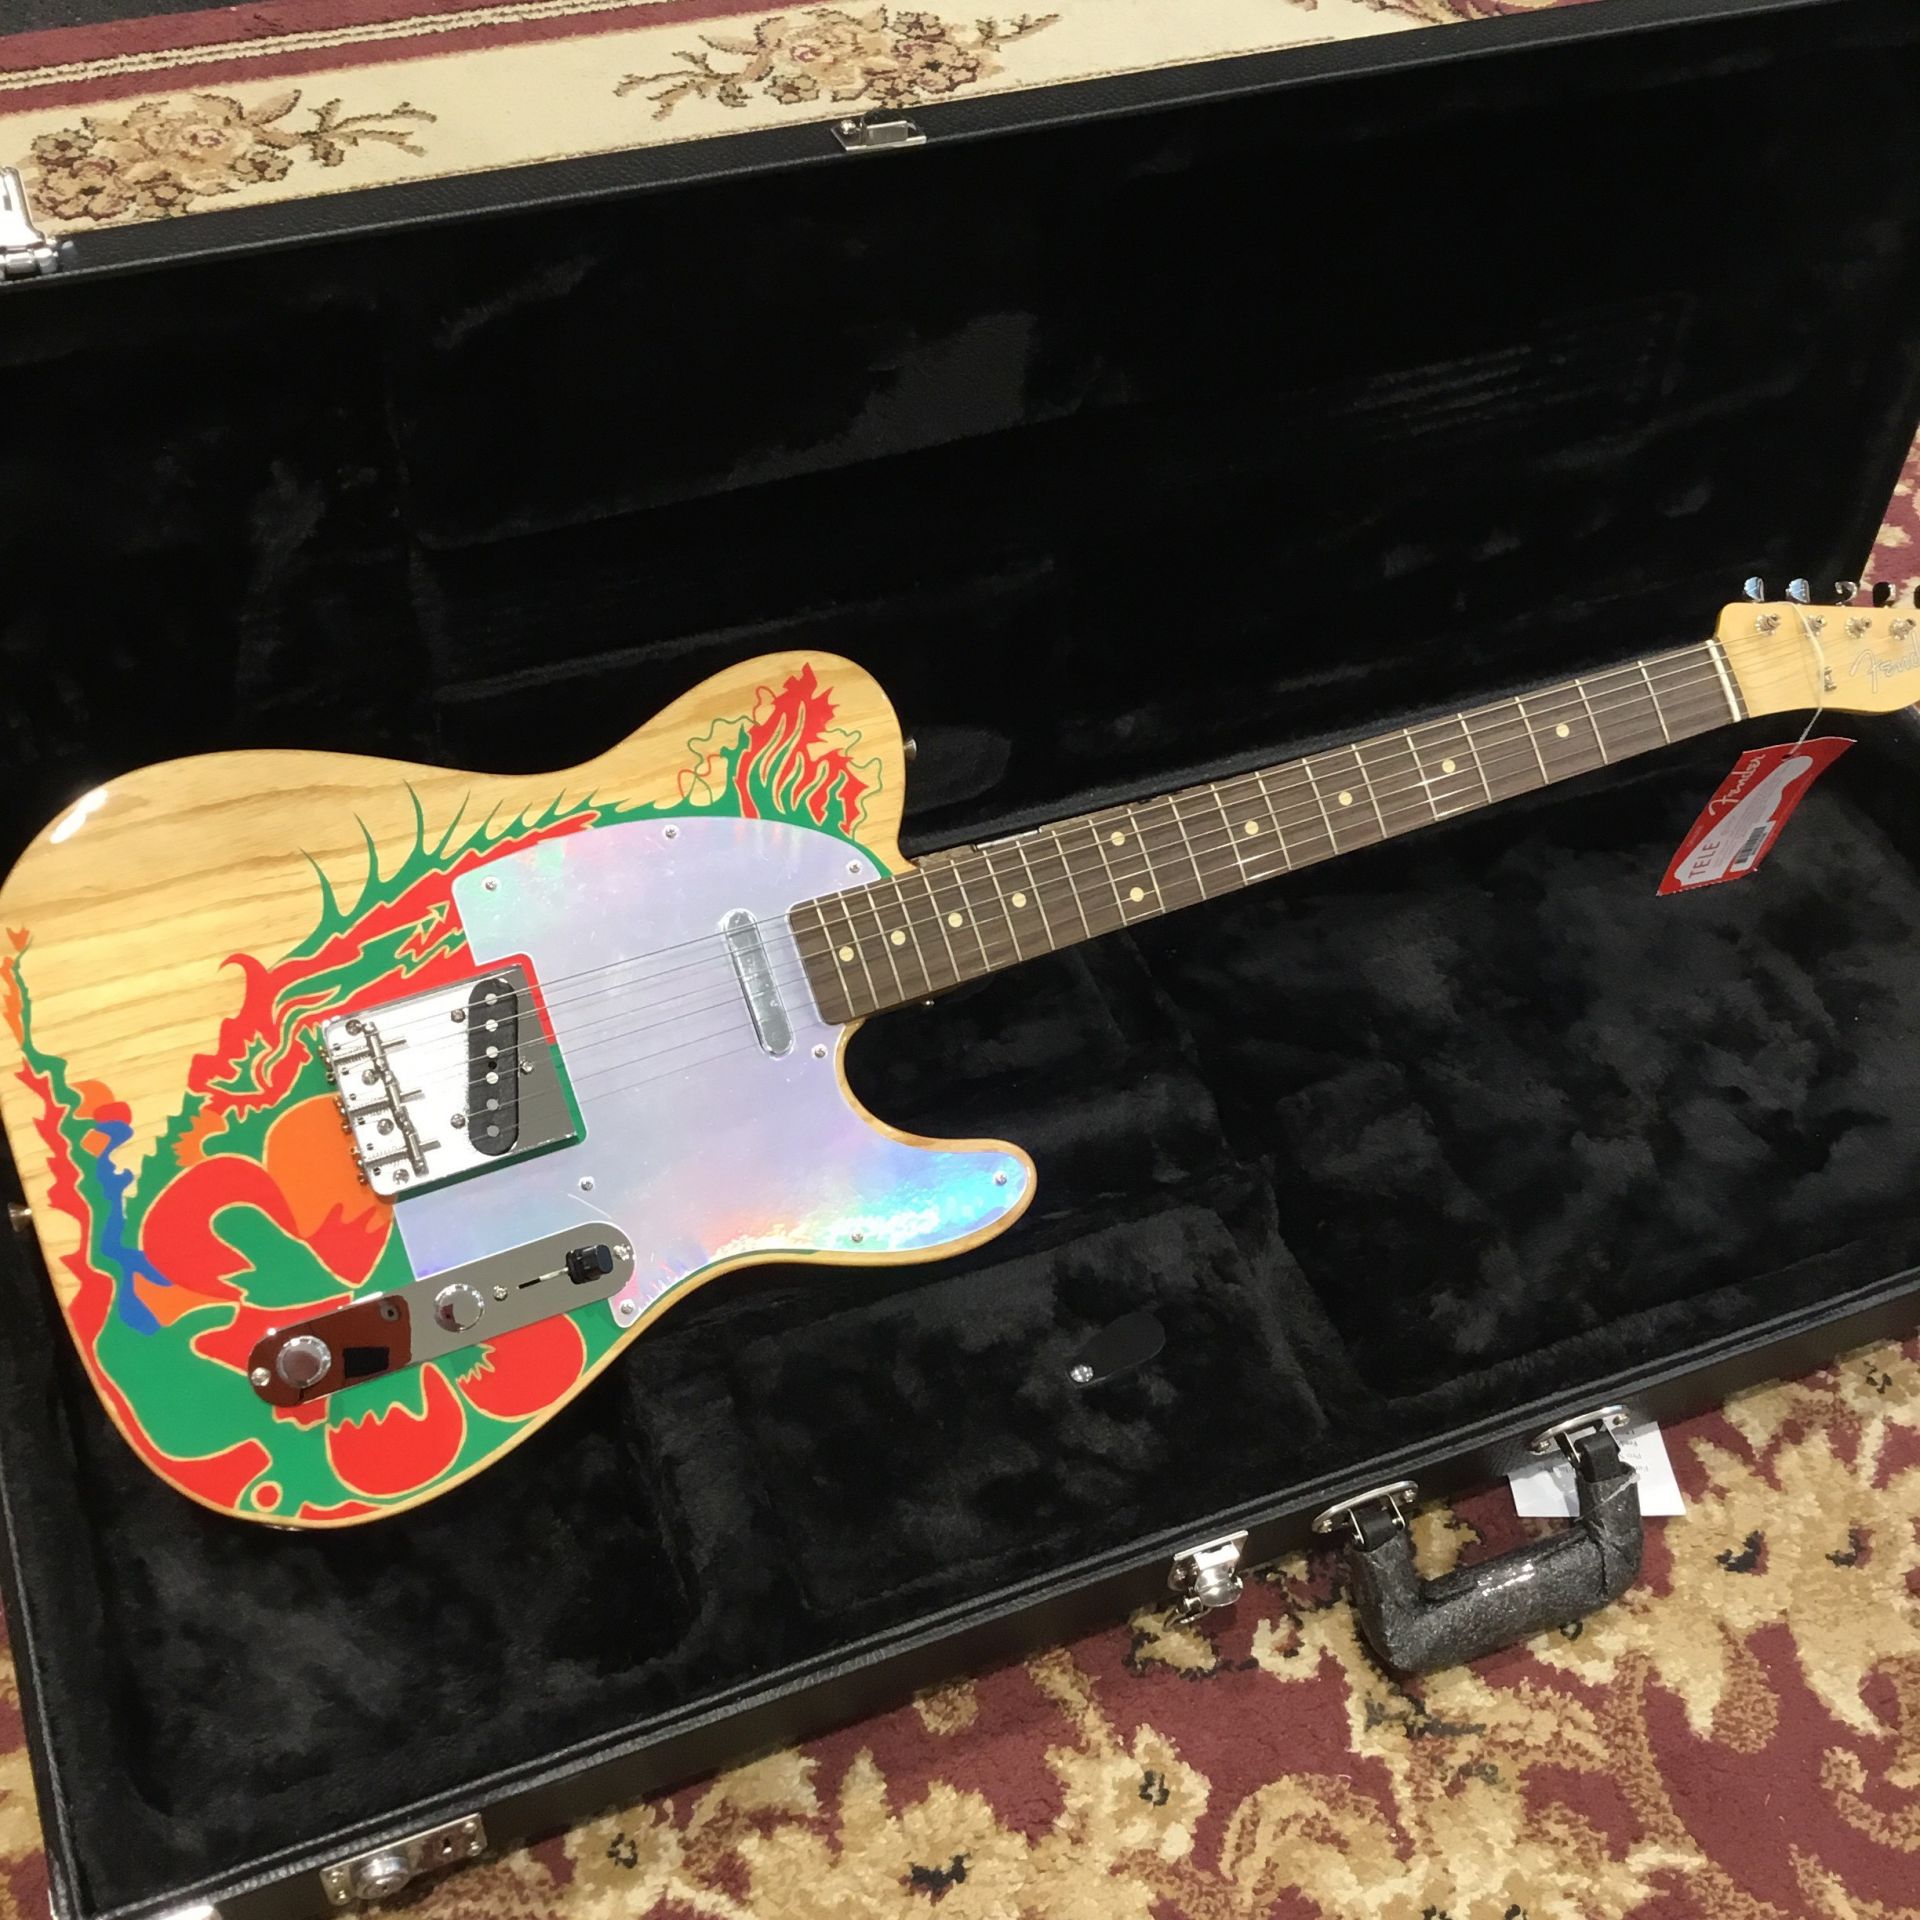 *Fender Jimmy Page Telecasterは、ロック史に名を残す名アルバム「LED ZEPPELIN Ⅰ」リリース50周年を記念して開発されたジミー・ペイジシグネチャーモデル。1966年にジェフ・ベックからプレゼントされ、8枚の丸型ミラーをボディに張り付けた「ミラーテレキャスター」を […]